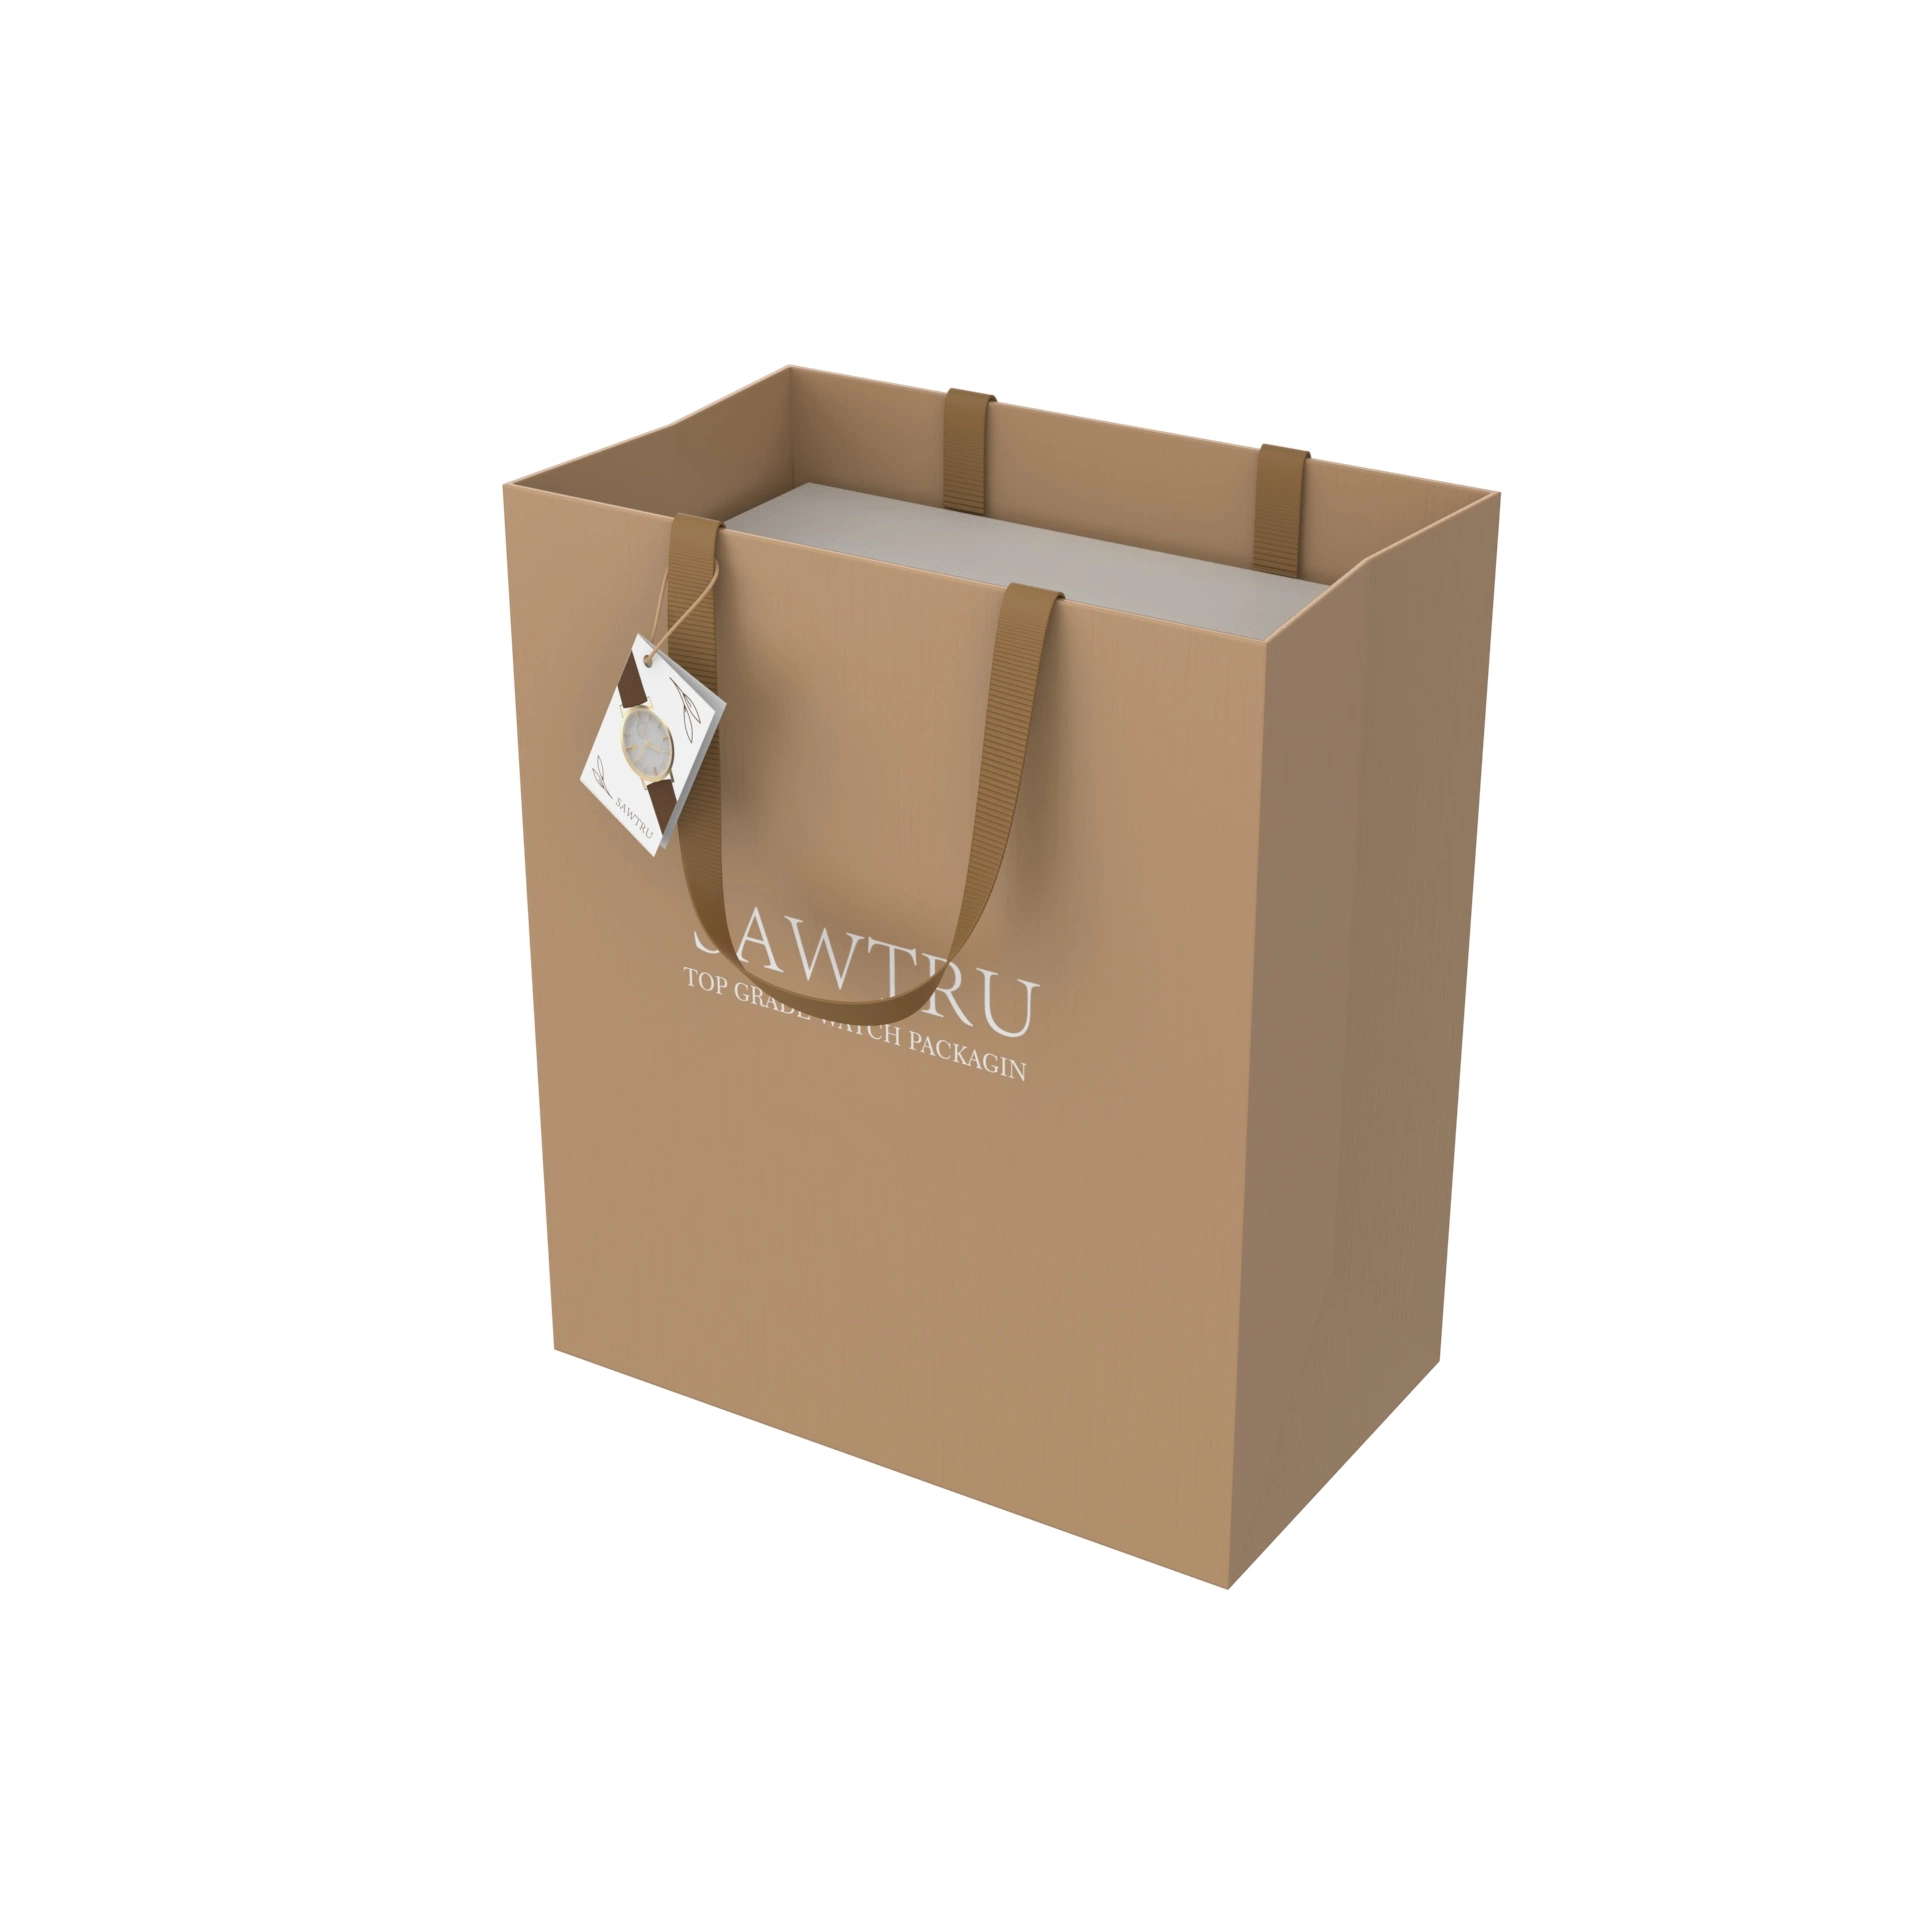 Sawtruu Custom Karton Papier Uhren Boxen Papier und Papiertaschen Vollständiges Paket